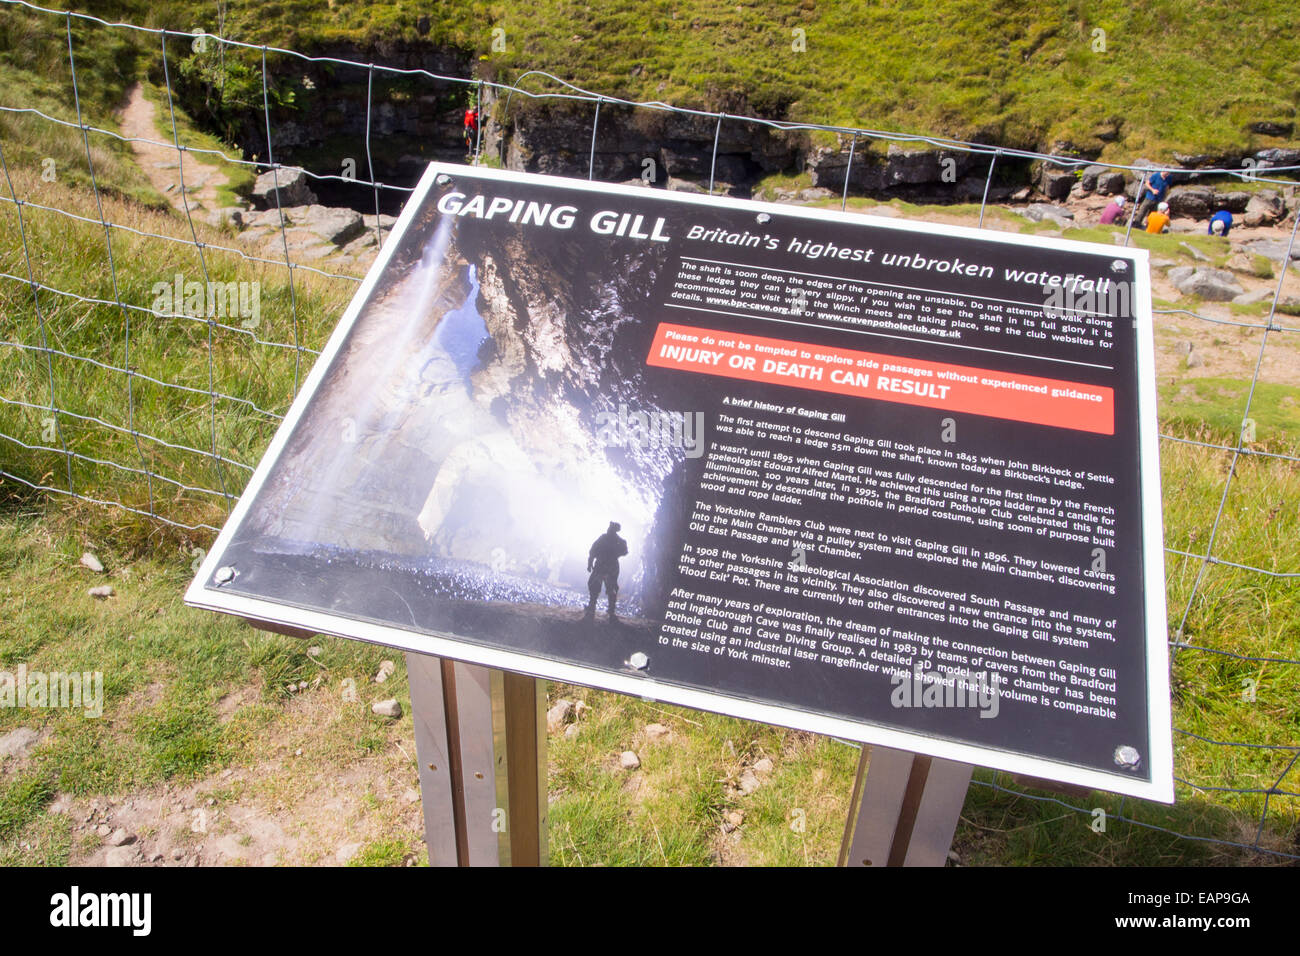 Il famoso schiusi Gill grotta sul Ingleborough nel Yorkshire Dales, UK. Esso presenta un enorme caverna e la discesa più lunga di qualsiasi cascata nel Regno Unito, a circa 300 metri. Foto Stock